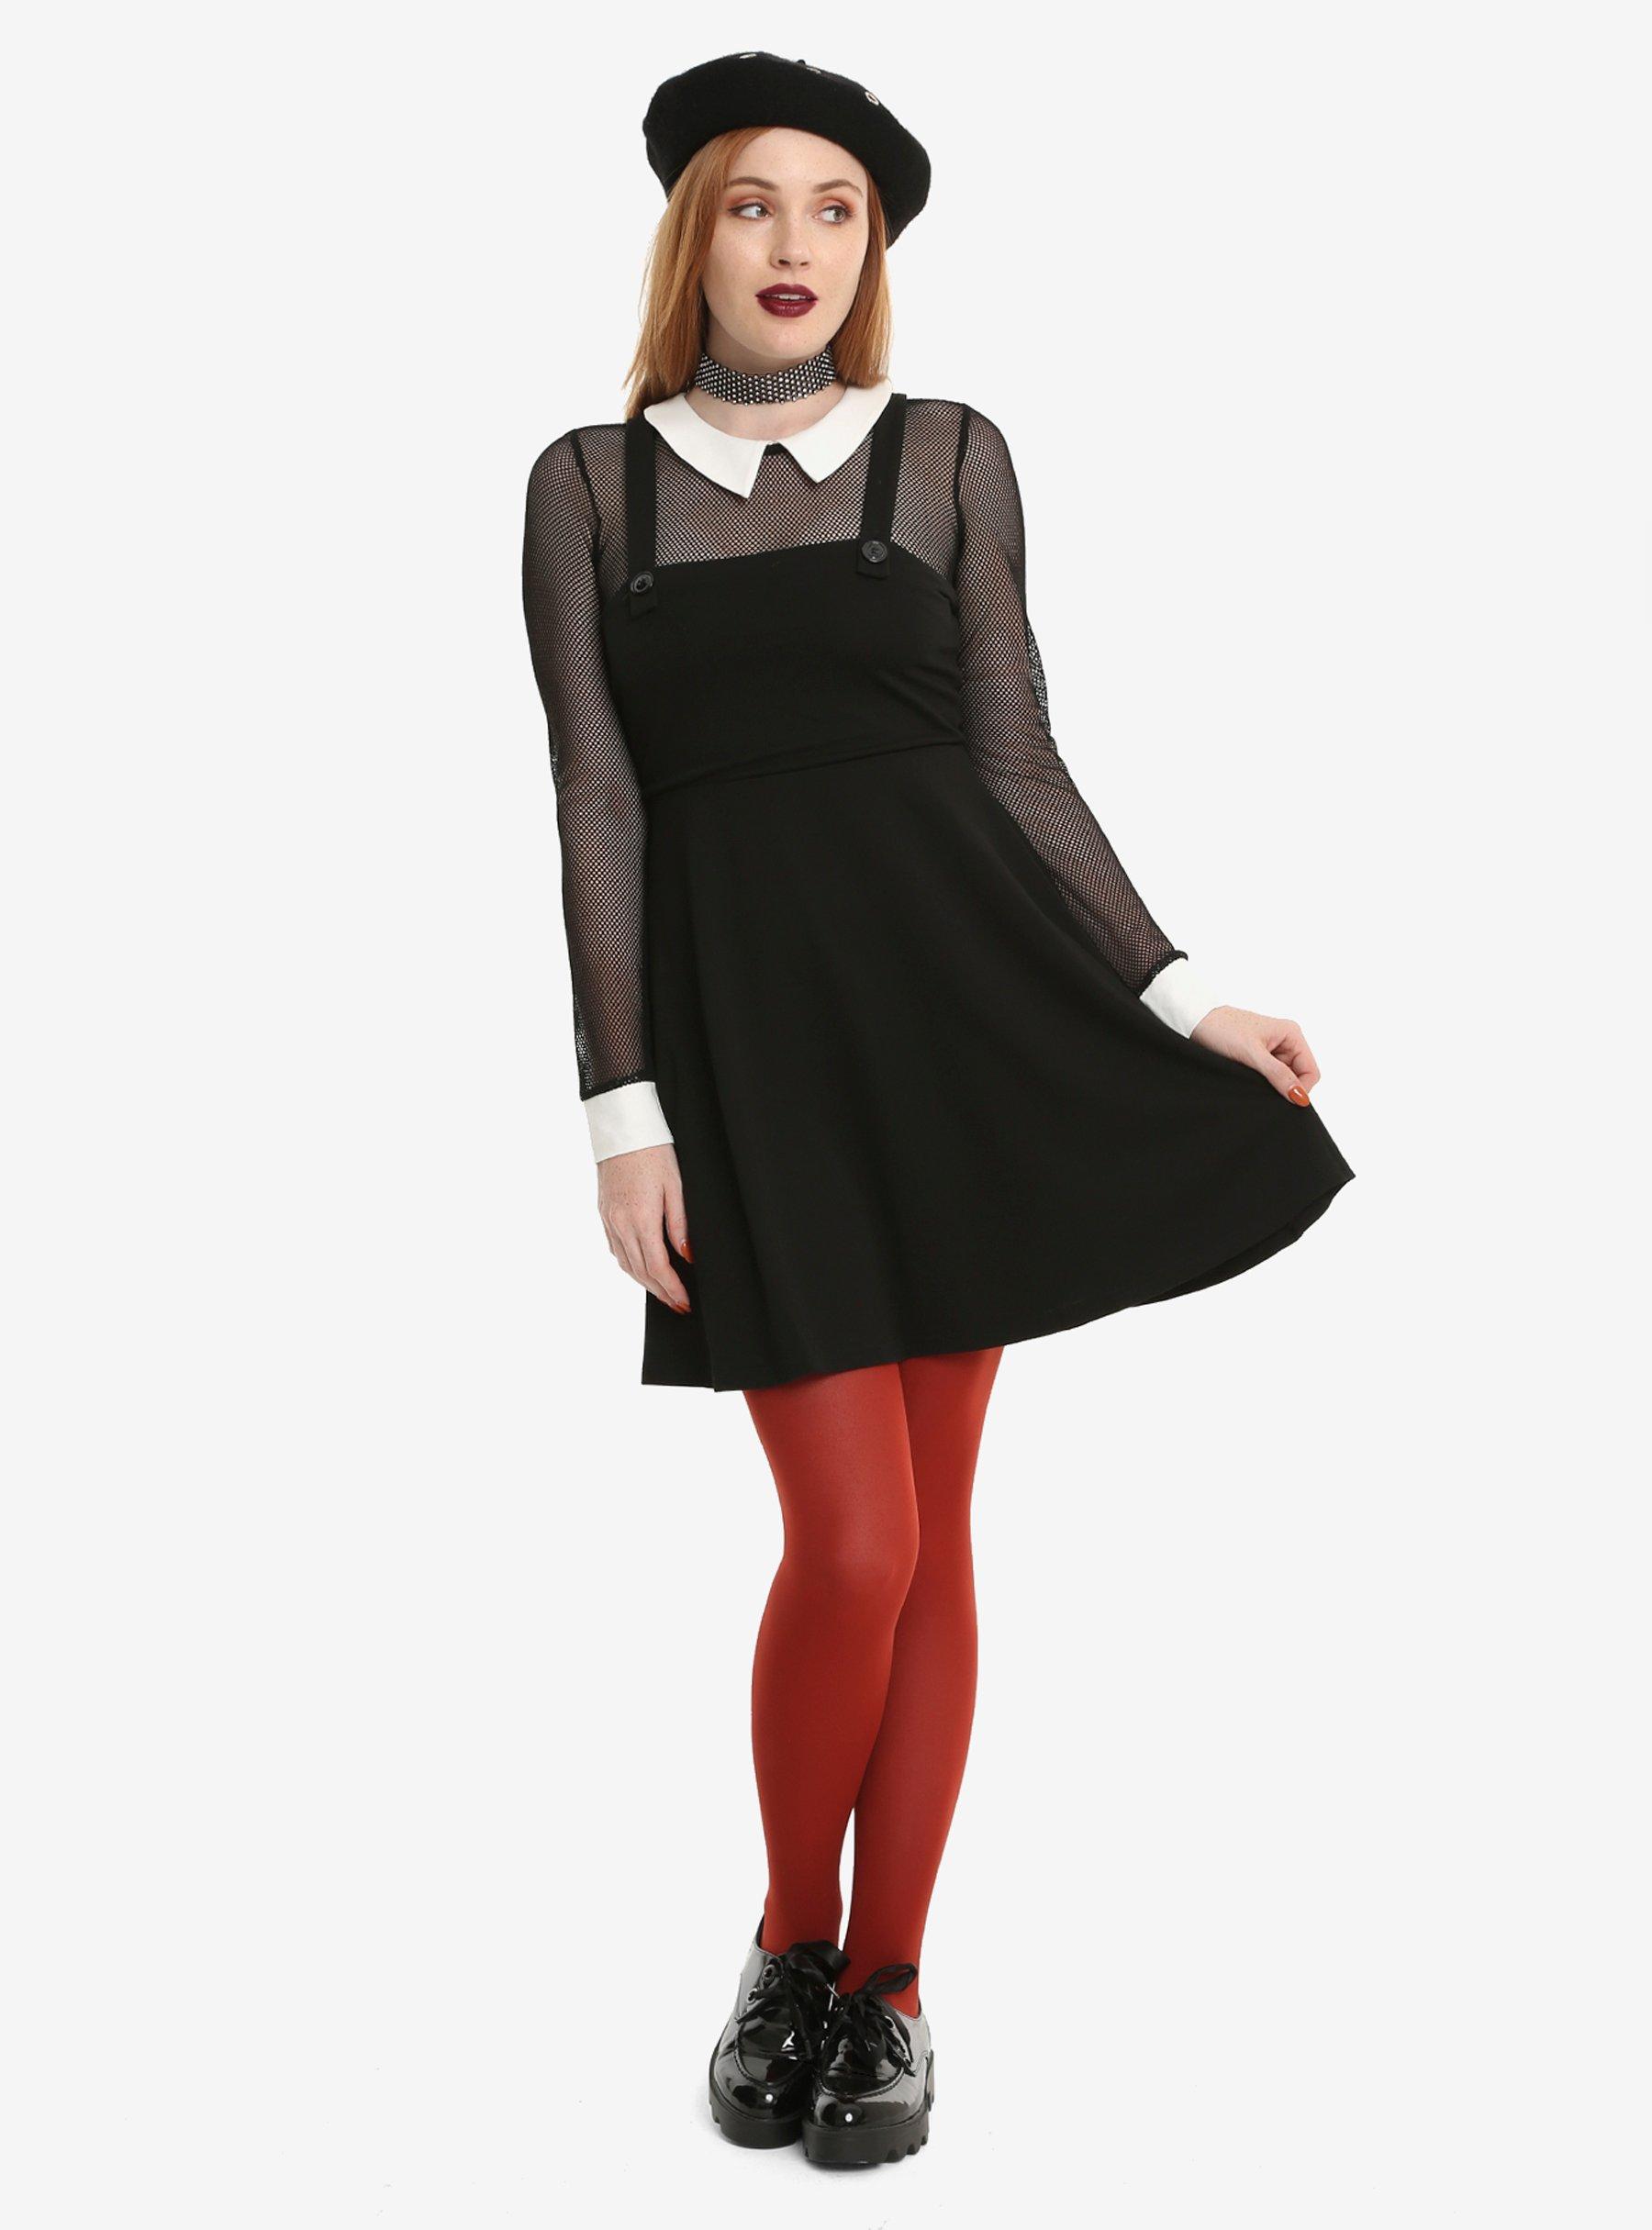 Black Fishnet Long-Sleeved Collared Jumper Dress, , alternate